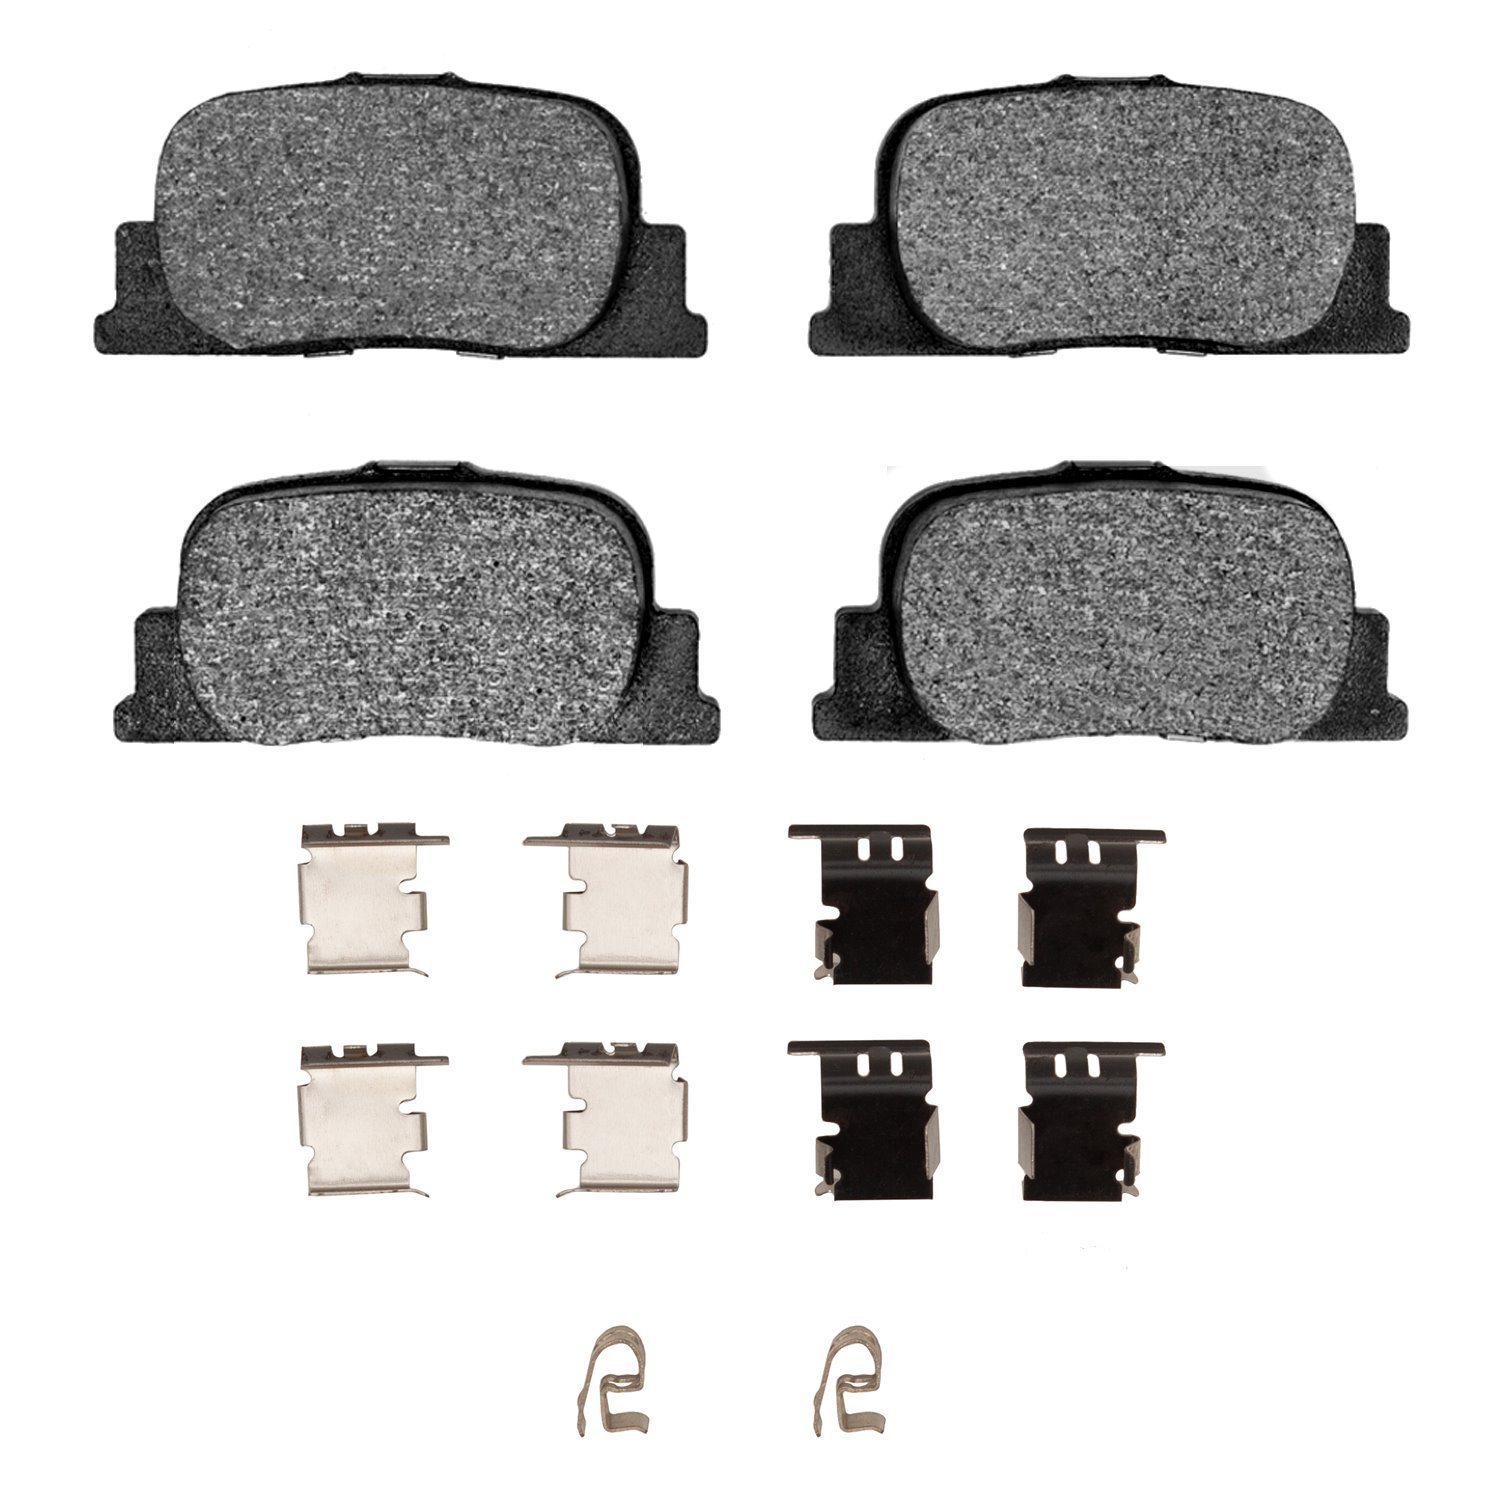 Ceramic Brake Pads & Hardware Kit, 2000-2010 Lexus/Toyota/Scion, Position: Rear